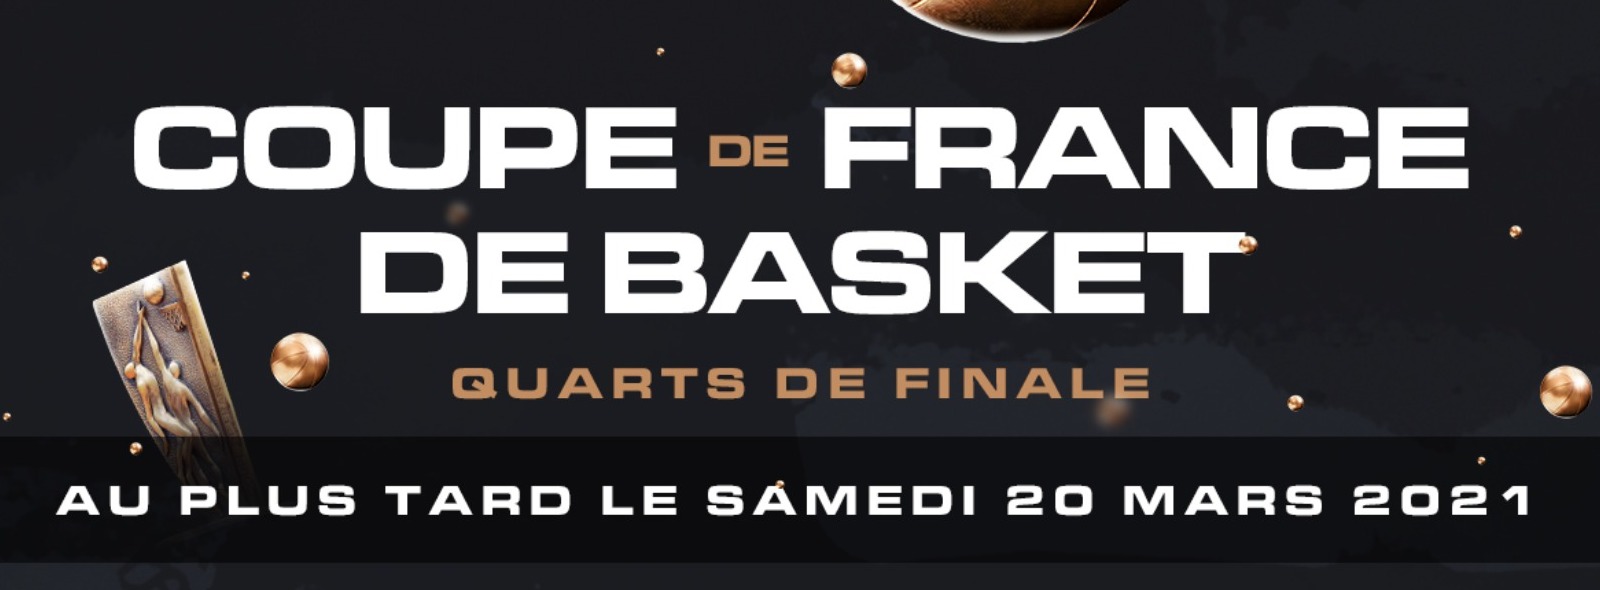  Coupe de France quarts de finale - Résultats du tirage au sort !